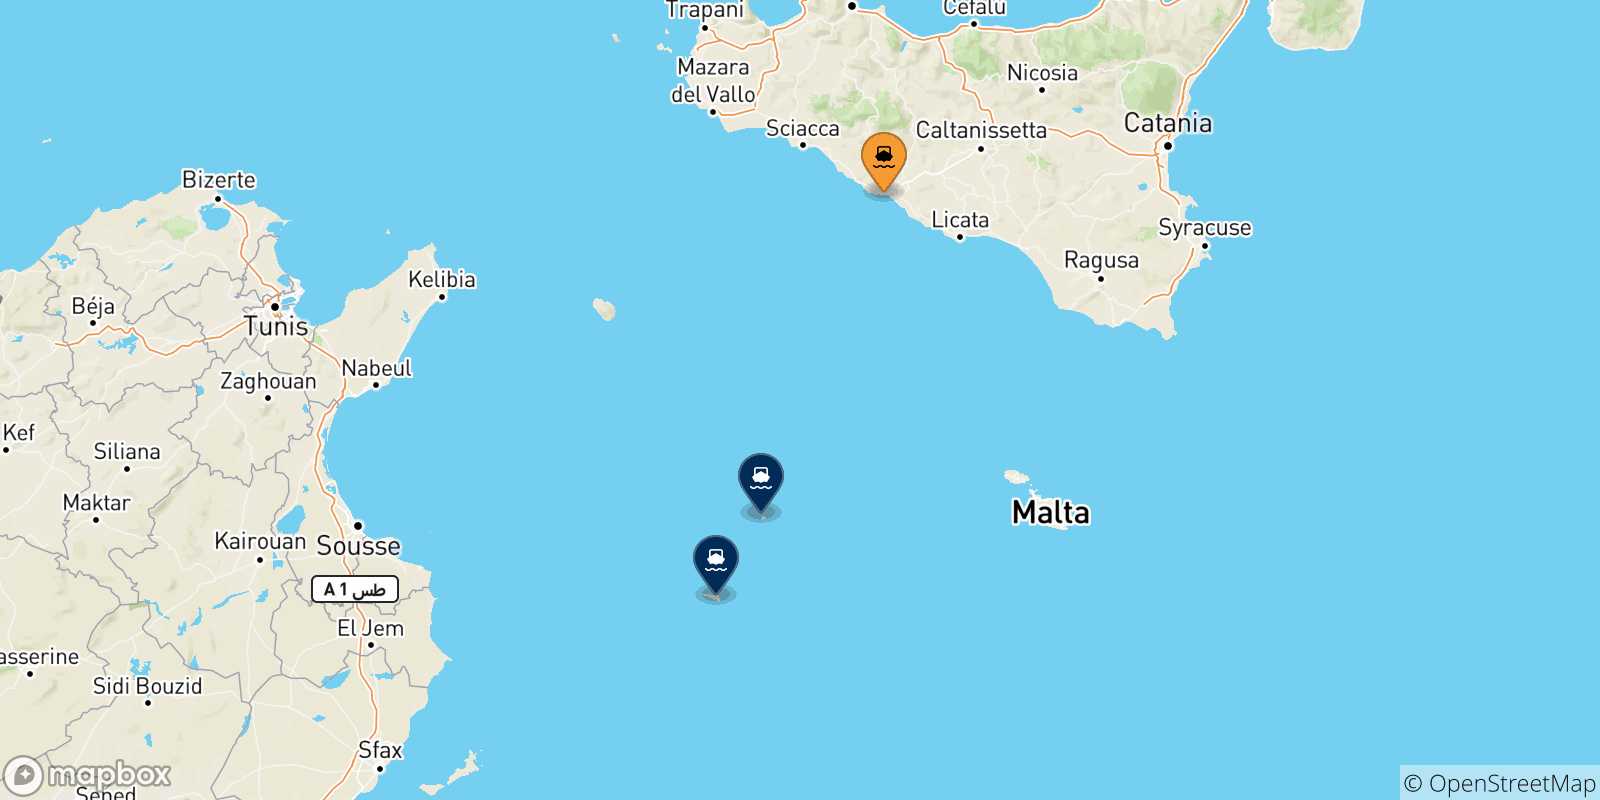 Mappa delle possibili rotte tra la Sicilia e le Isole Pelagie